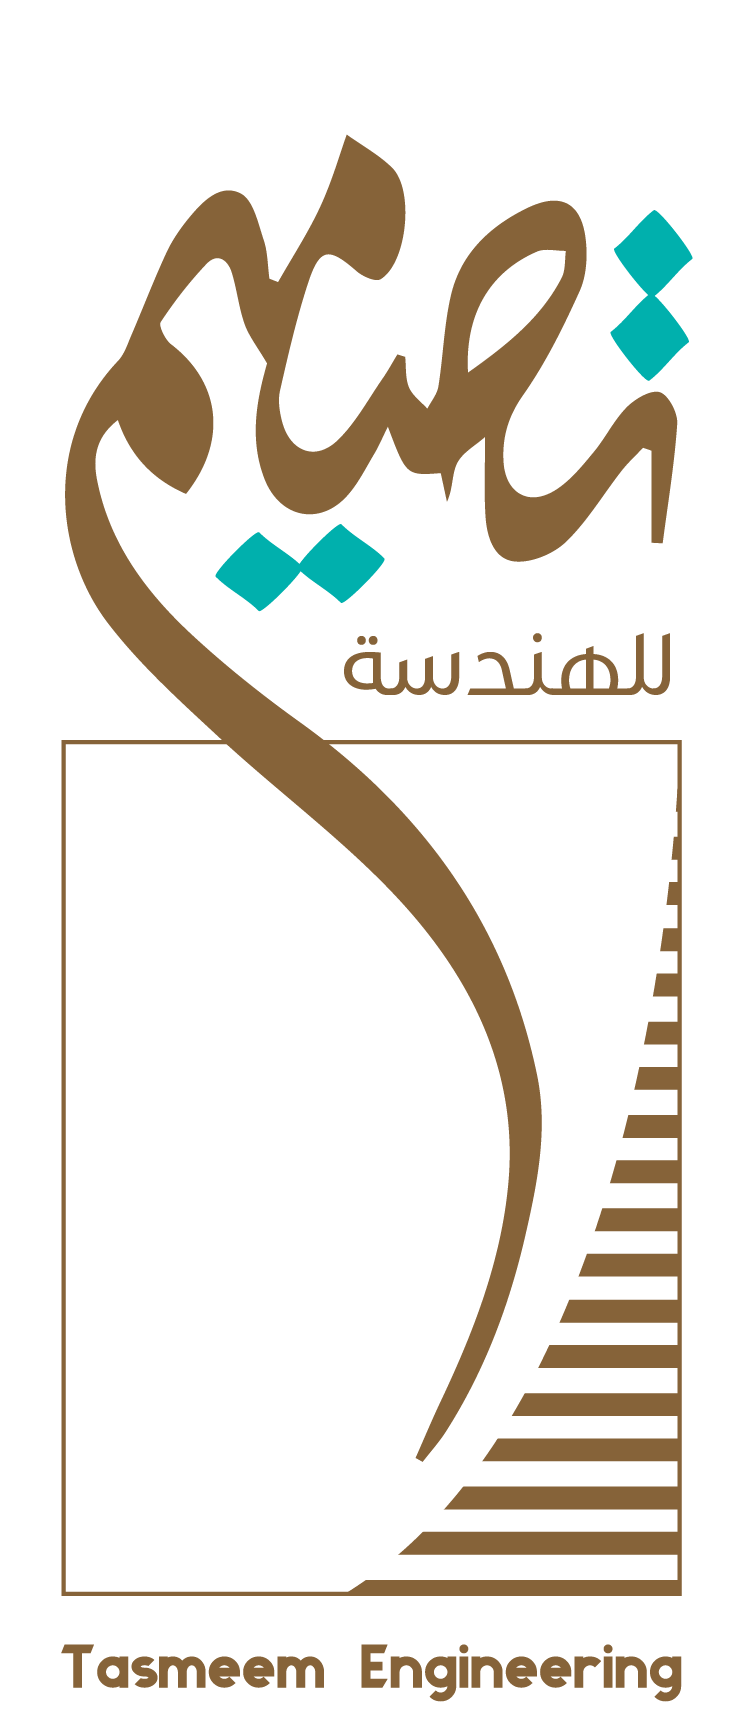 Tasmeem Engineering - logo